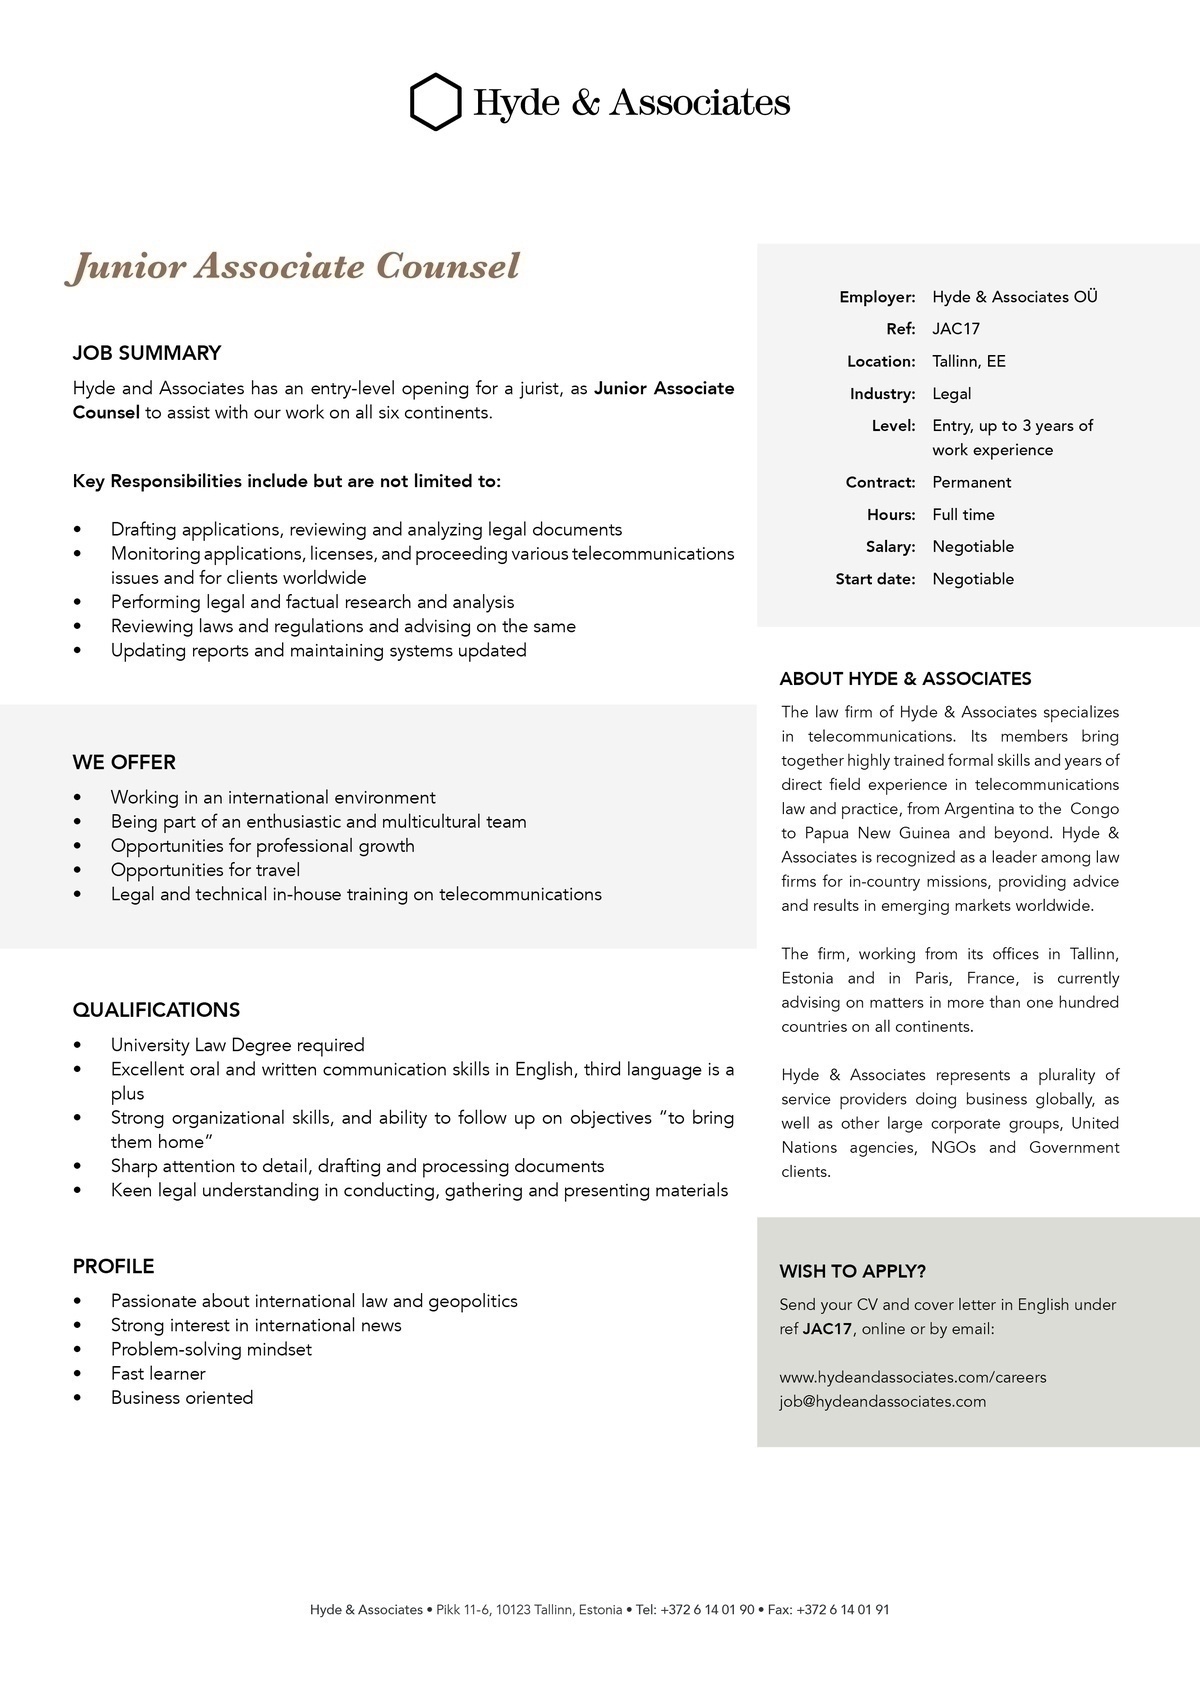 HYDE & ASSOCIATES OÜ Junior Associate Counsel